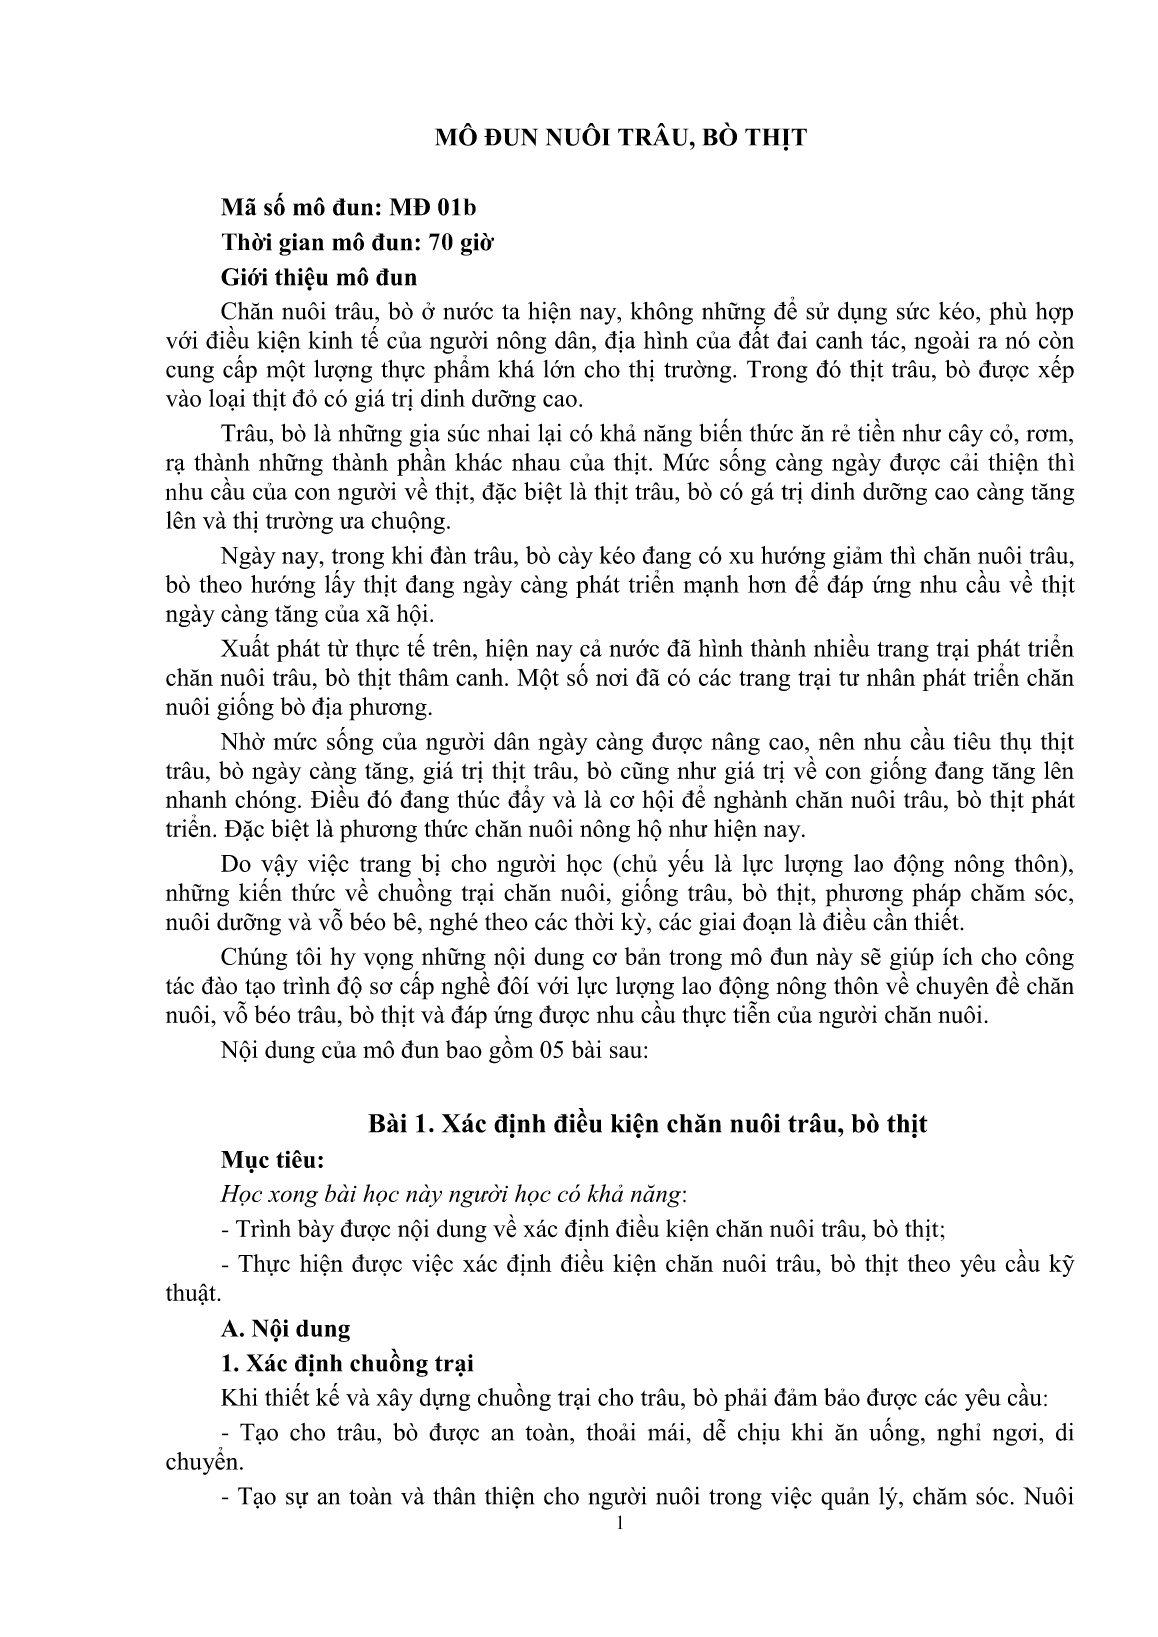 Giáo trình mô đun Nuôi trâu, bò thịt (Trình độ: Đào tạo dưới 3 tháng) trang 3